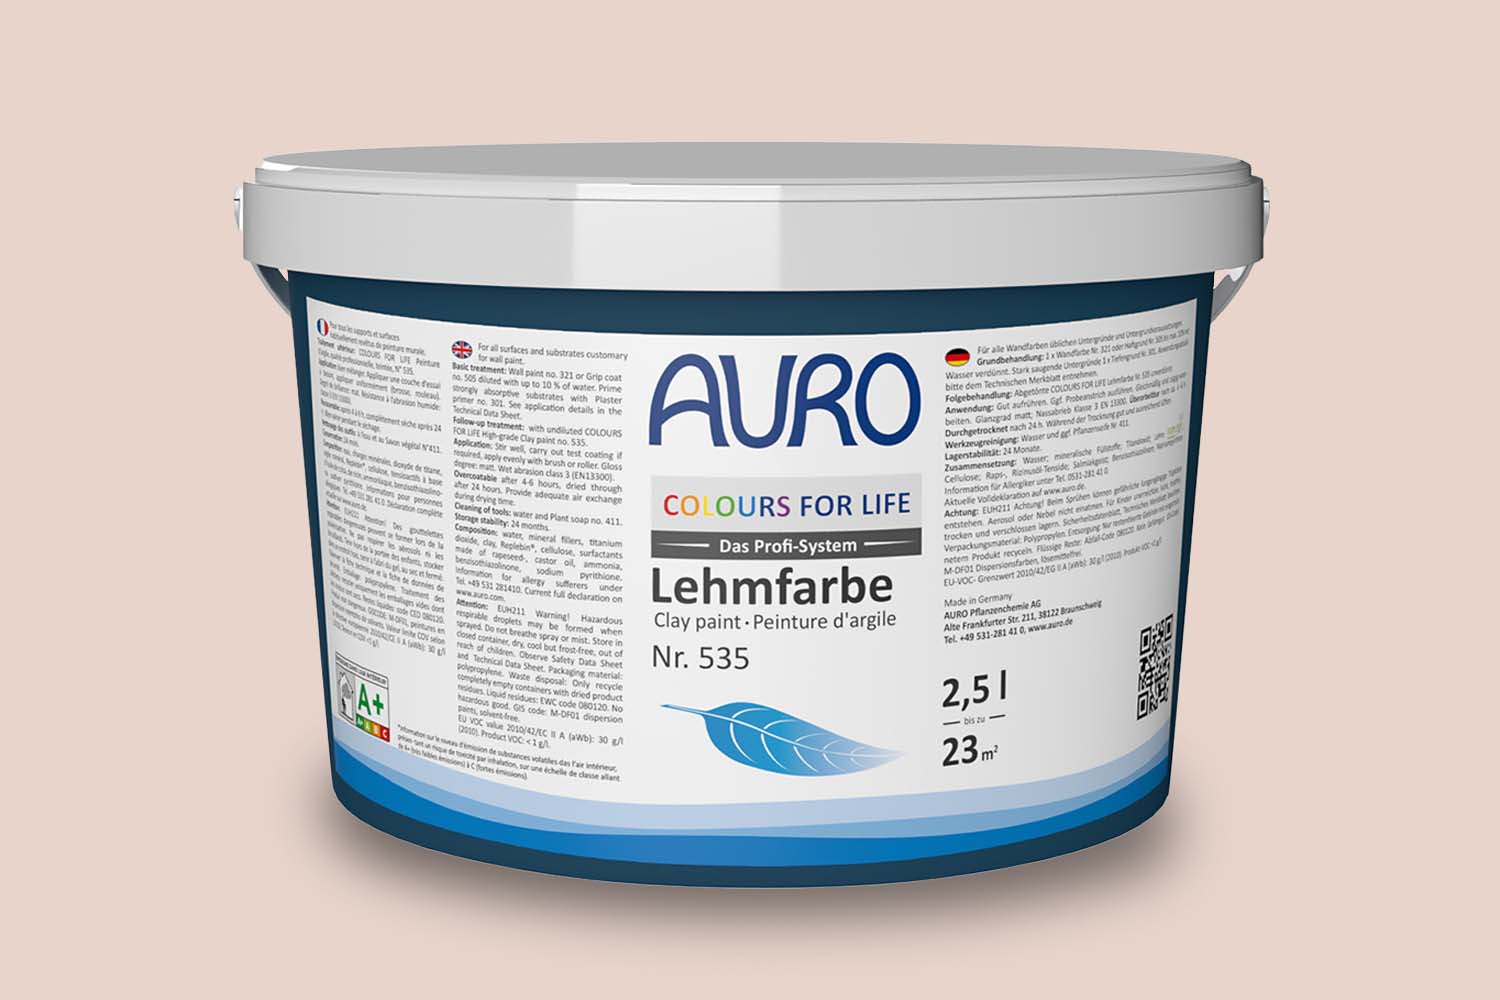 Auro Profi-Lehmfarbe Nr. 535 midsummer dust Colours For Life